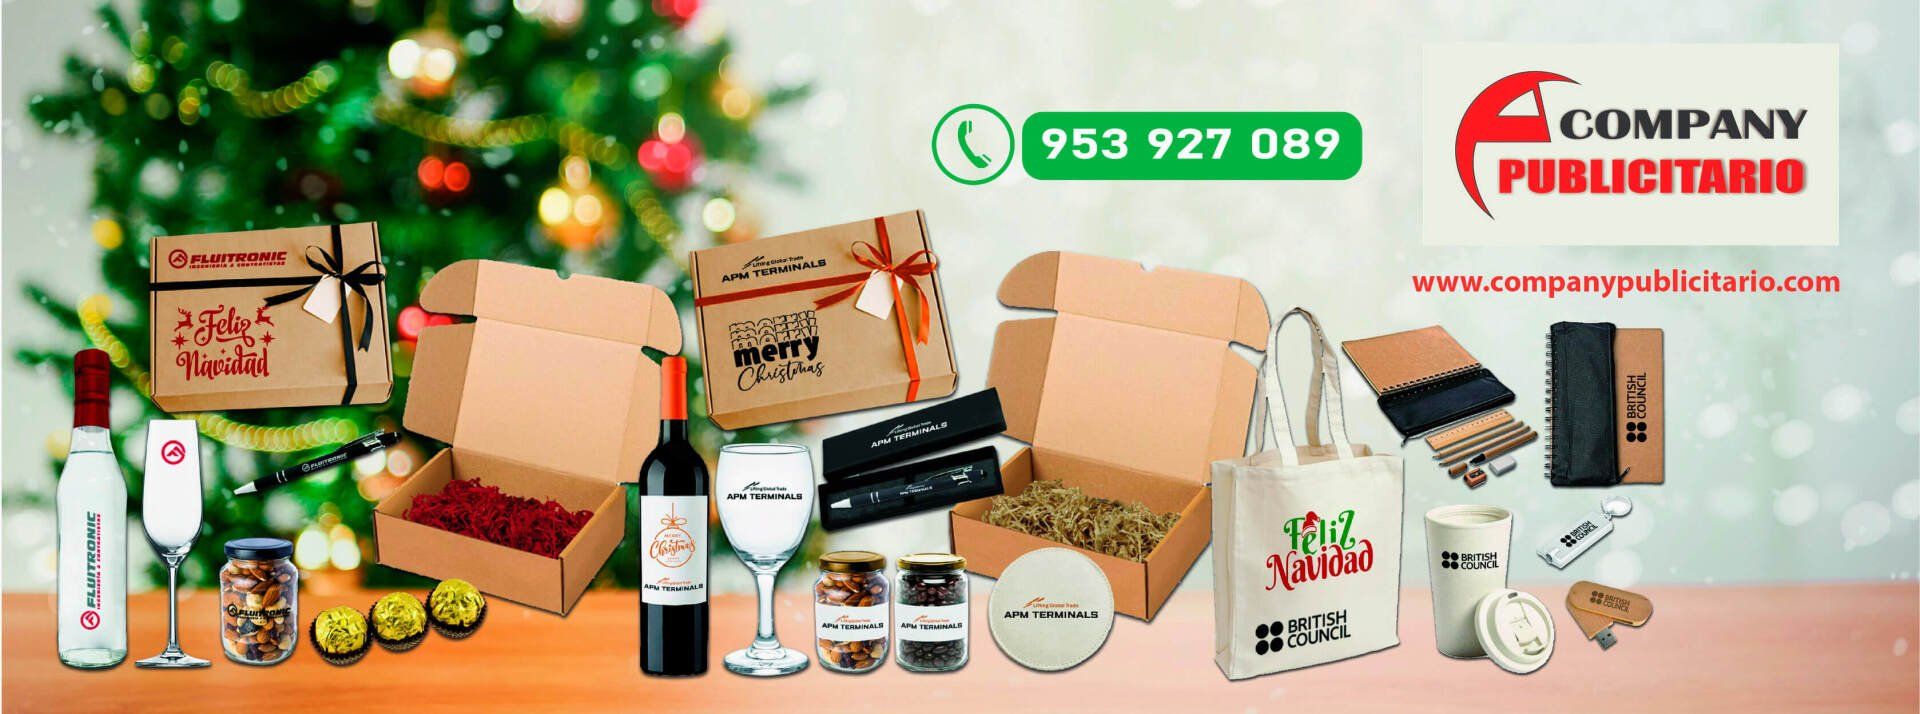 Company Publicitario merchandising navideños